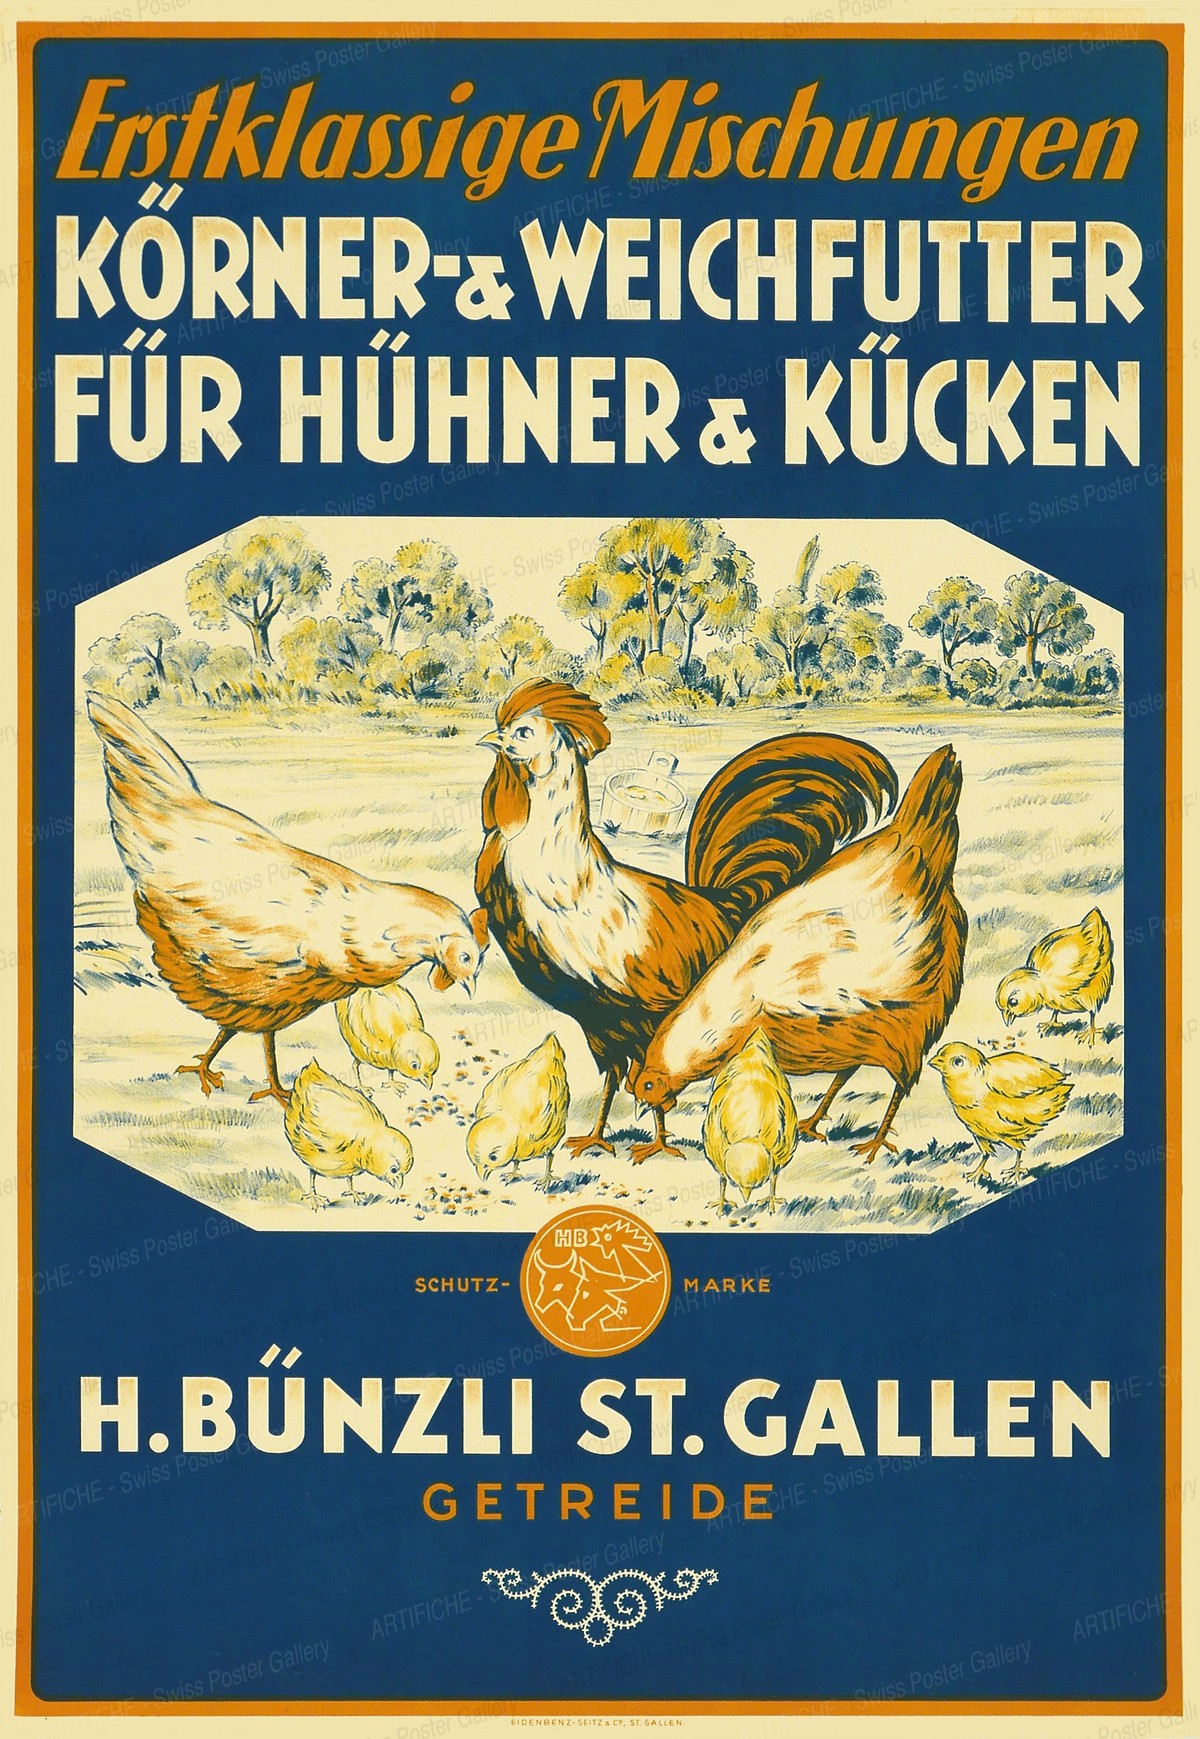 H. Bünzli St. Gallen grains – first-class chicken feed, Artist unknown